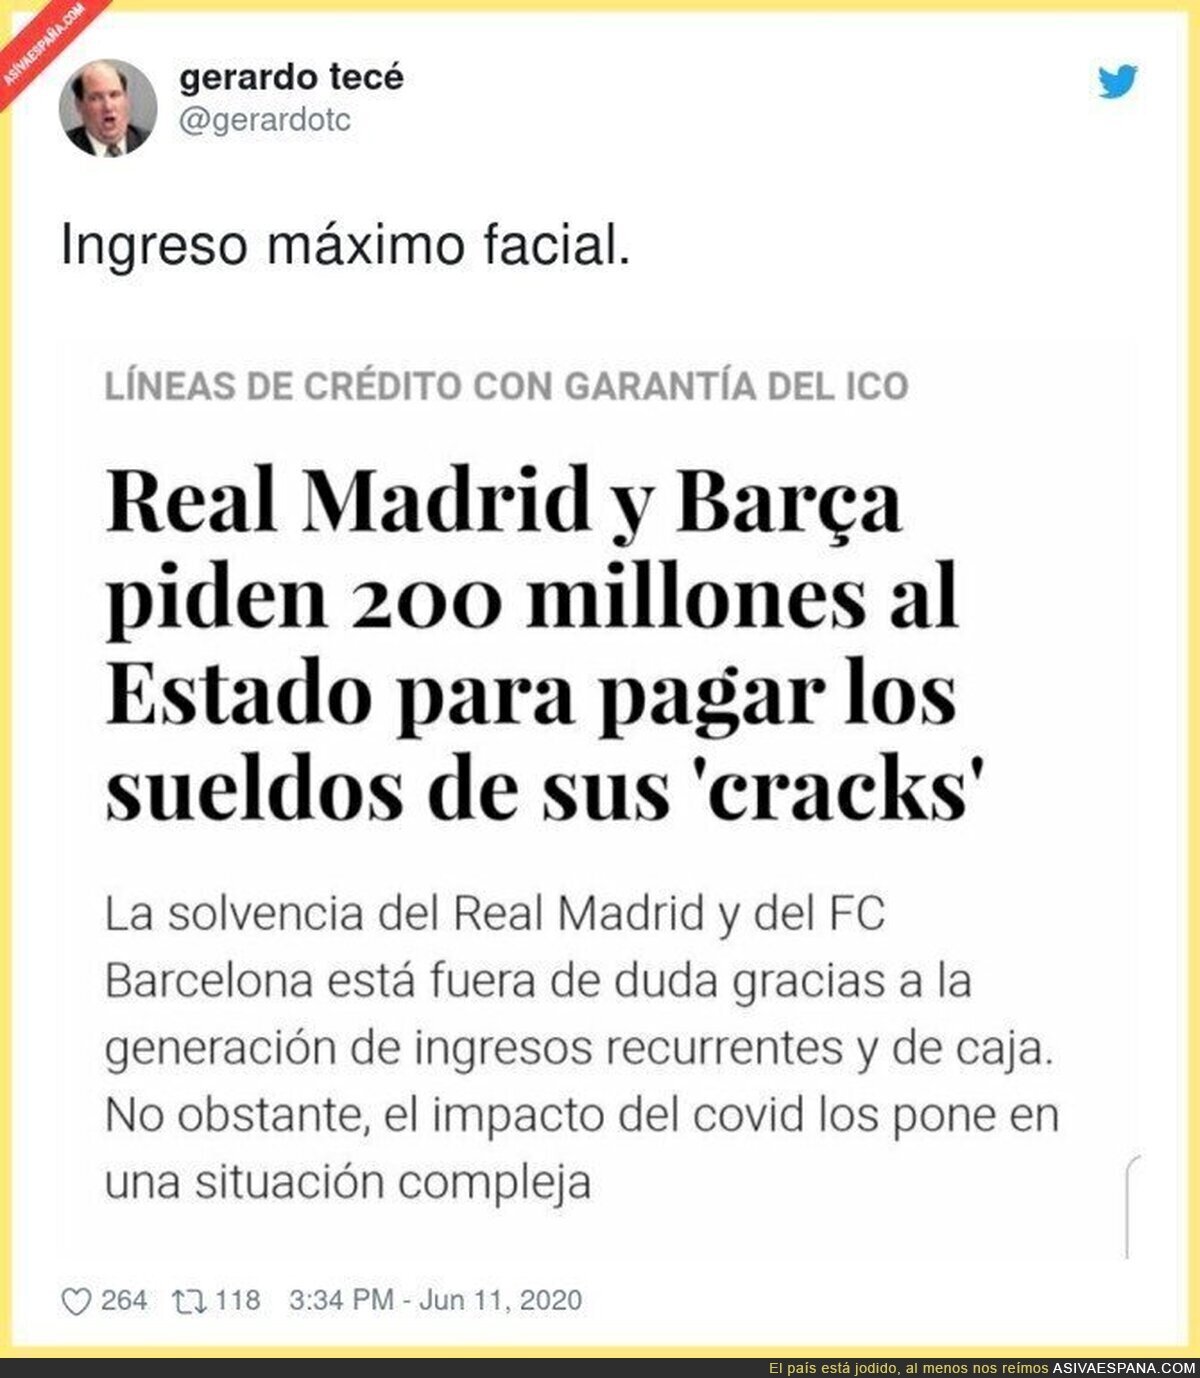 El negocio del fútbol a costa de todos los españoles